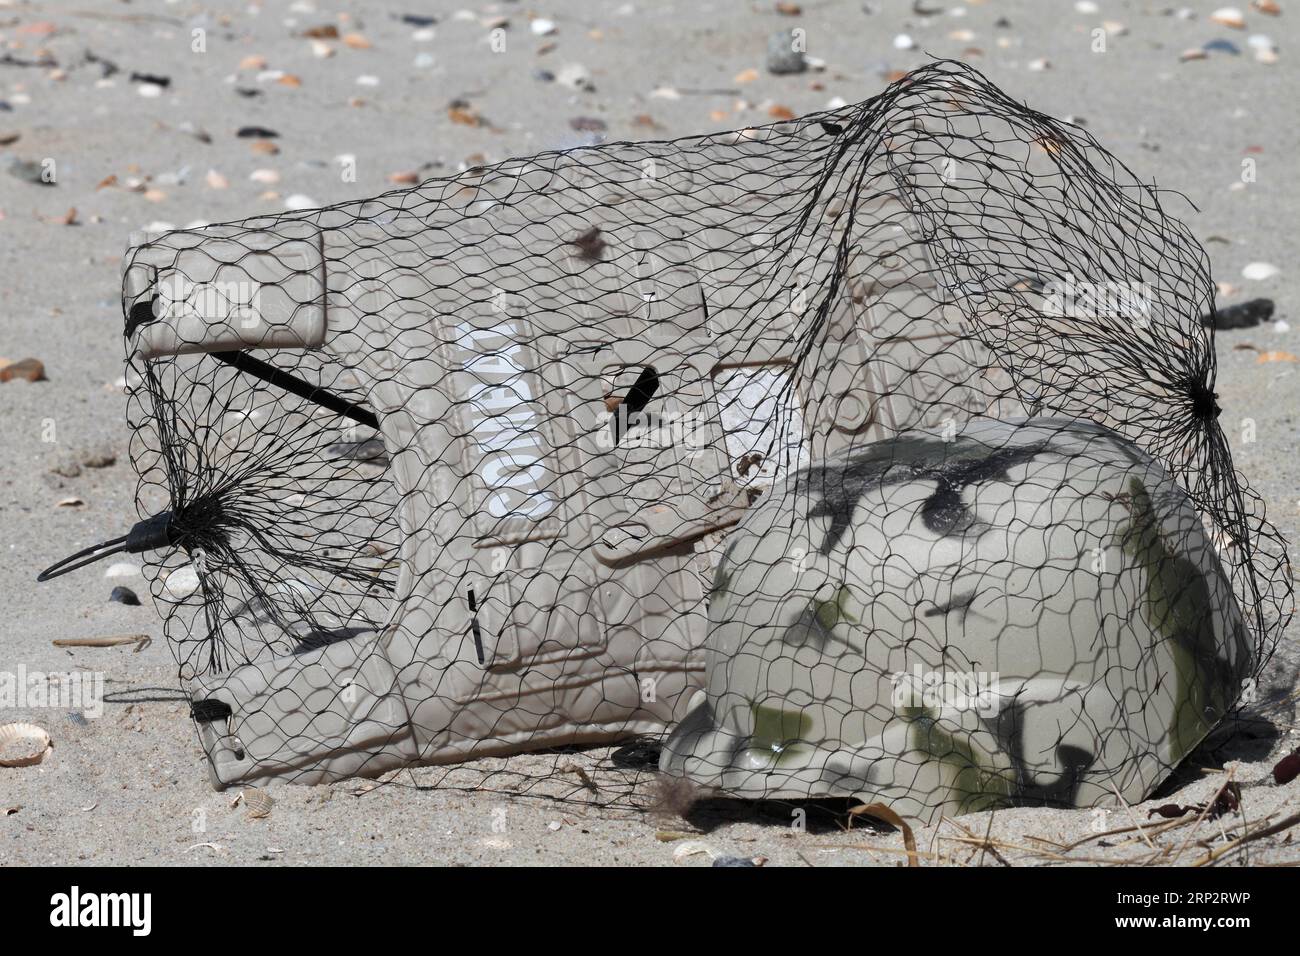 Rifiuti marini lavati sulla spiaggia, impatto umano sull'ecosistema marino, Minsener Oog, bassa Sassonia, Germania Foto Stock